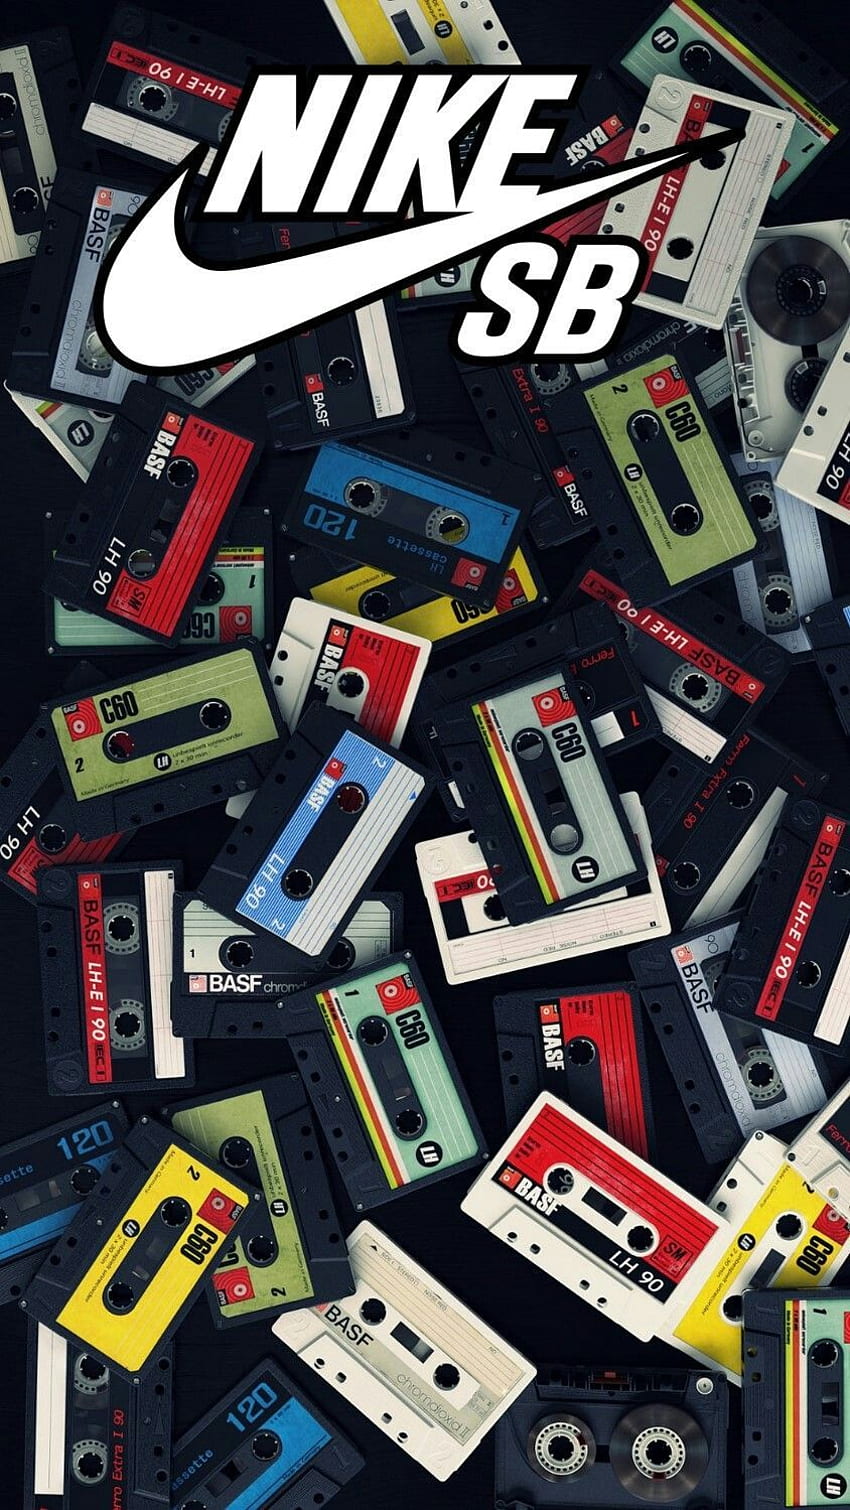 Nike Retro Phone: Bạn là fan của Nike và còn yêu thích những thiết bị điện tử cũ kỹ như điện thoại cổ điển? Hãy xem qua bộ sưu tập Nike Retro Phone và không khí những năm 80 sẽ hiện về trong mỗi bức ảnh.